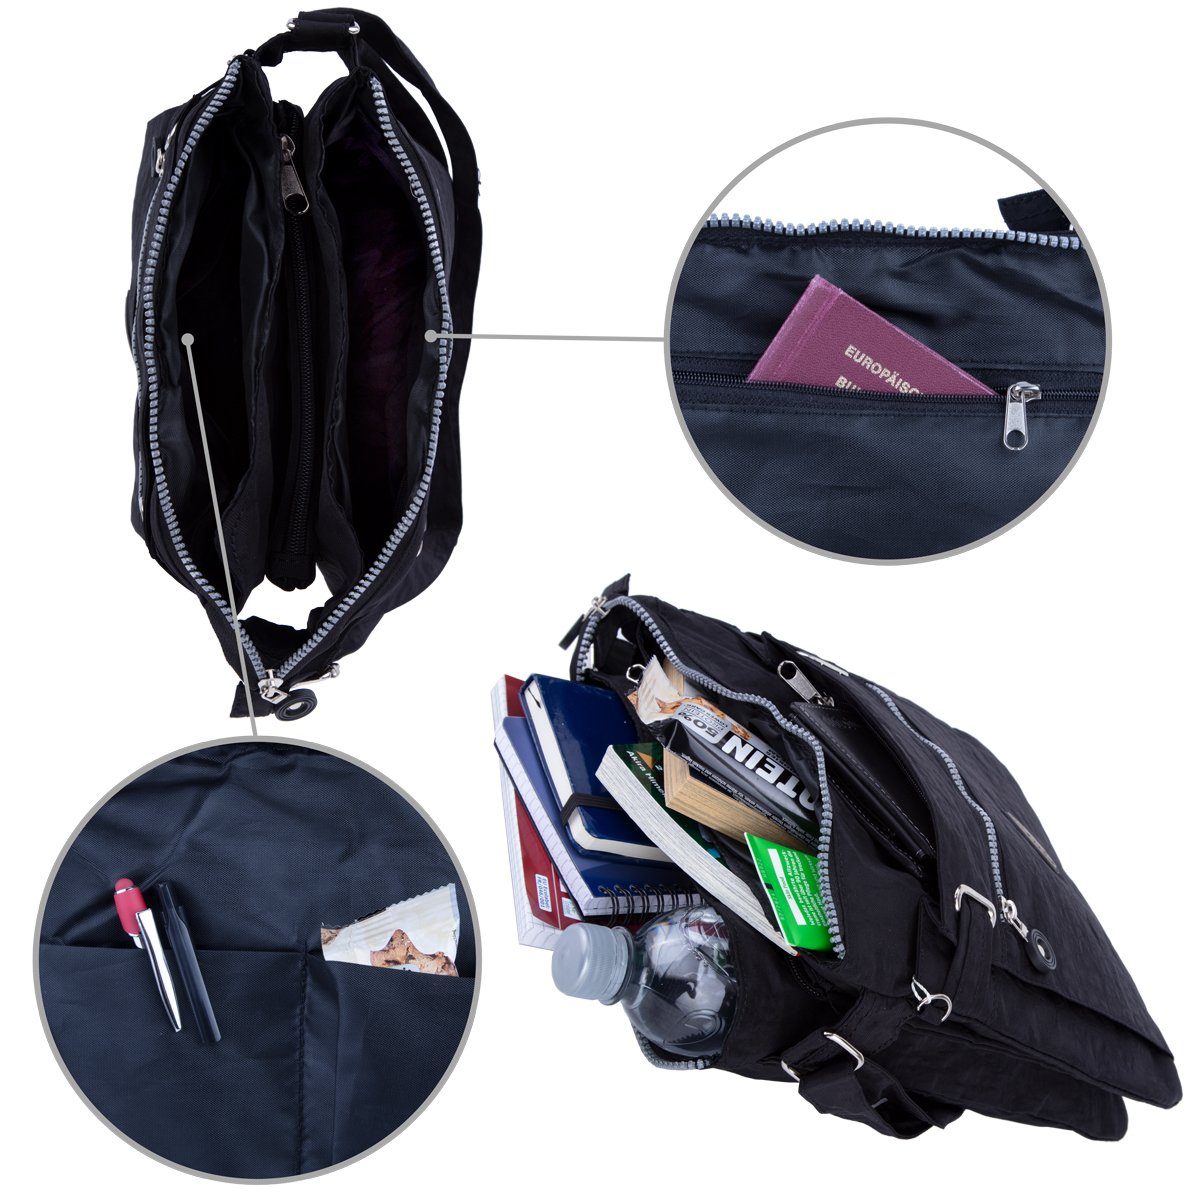 City-Tasche Kuriertasche Sportive Stauraum mit viel Umhänge-Tasche Urlaub Henkeltasche, Bag compagno schwarz 3-Fächer Reise